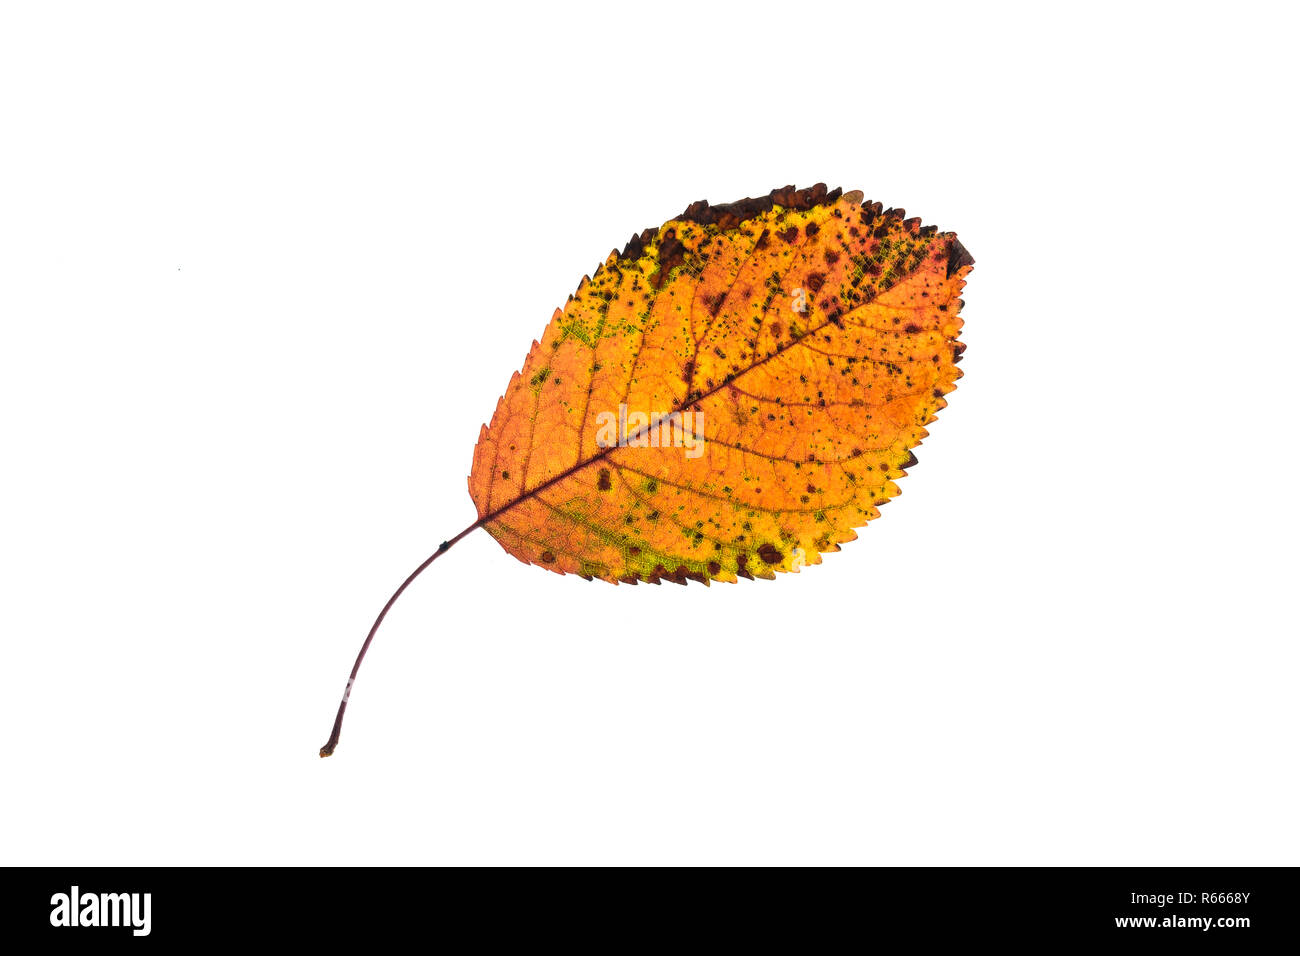 Herbst Blatt mit orange Färbung und grünen und braunen Flecken Stockfoto